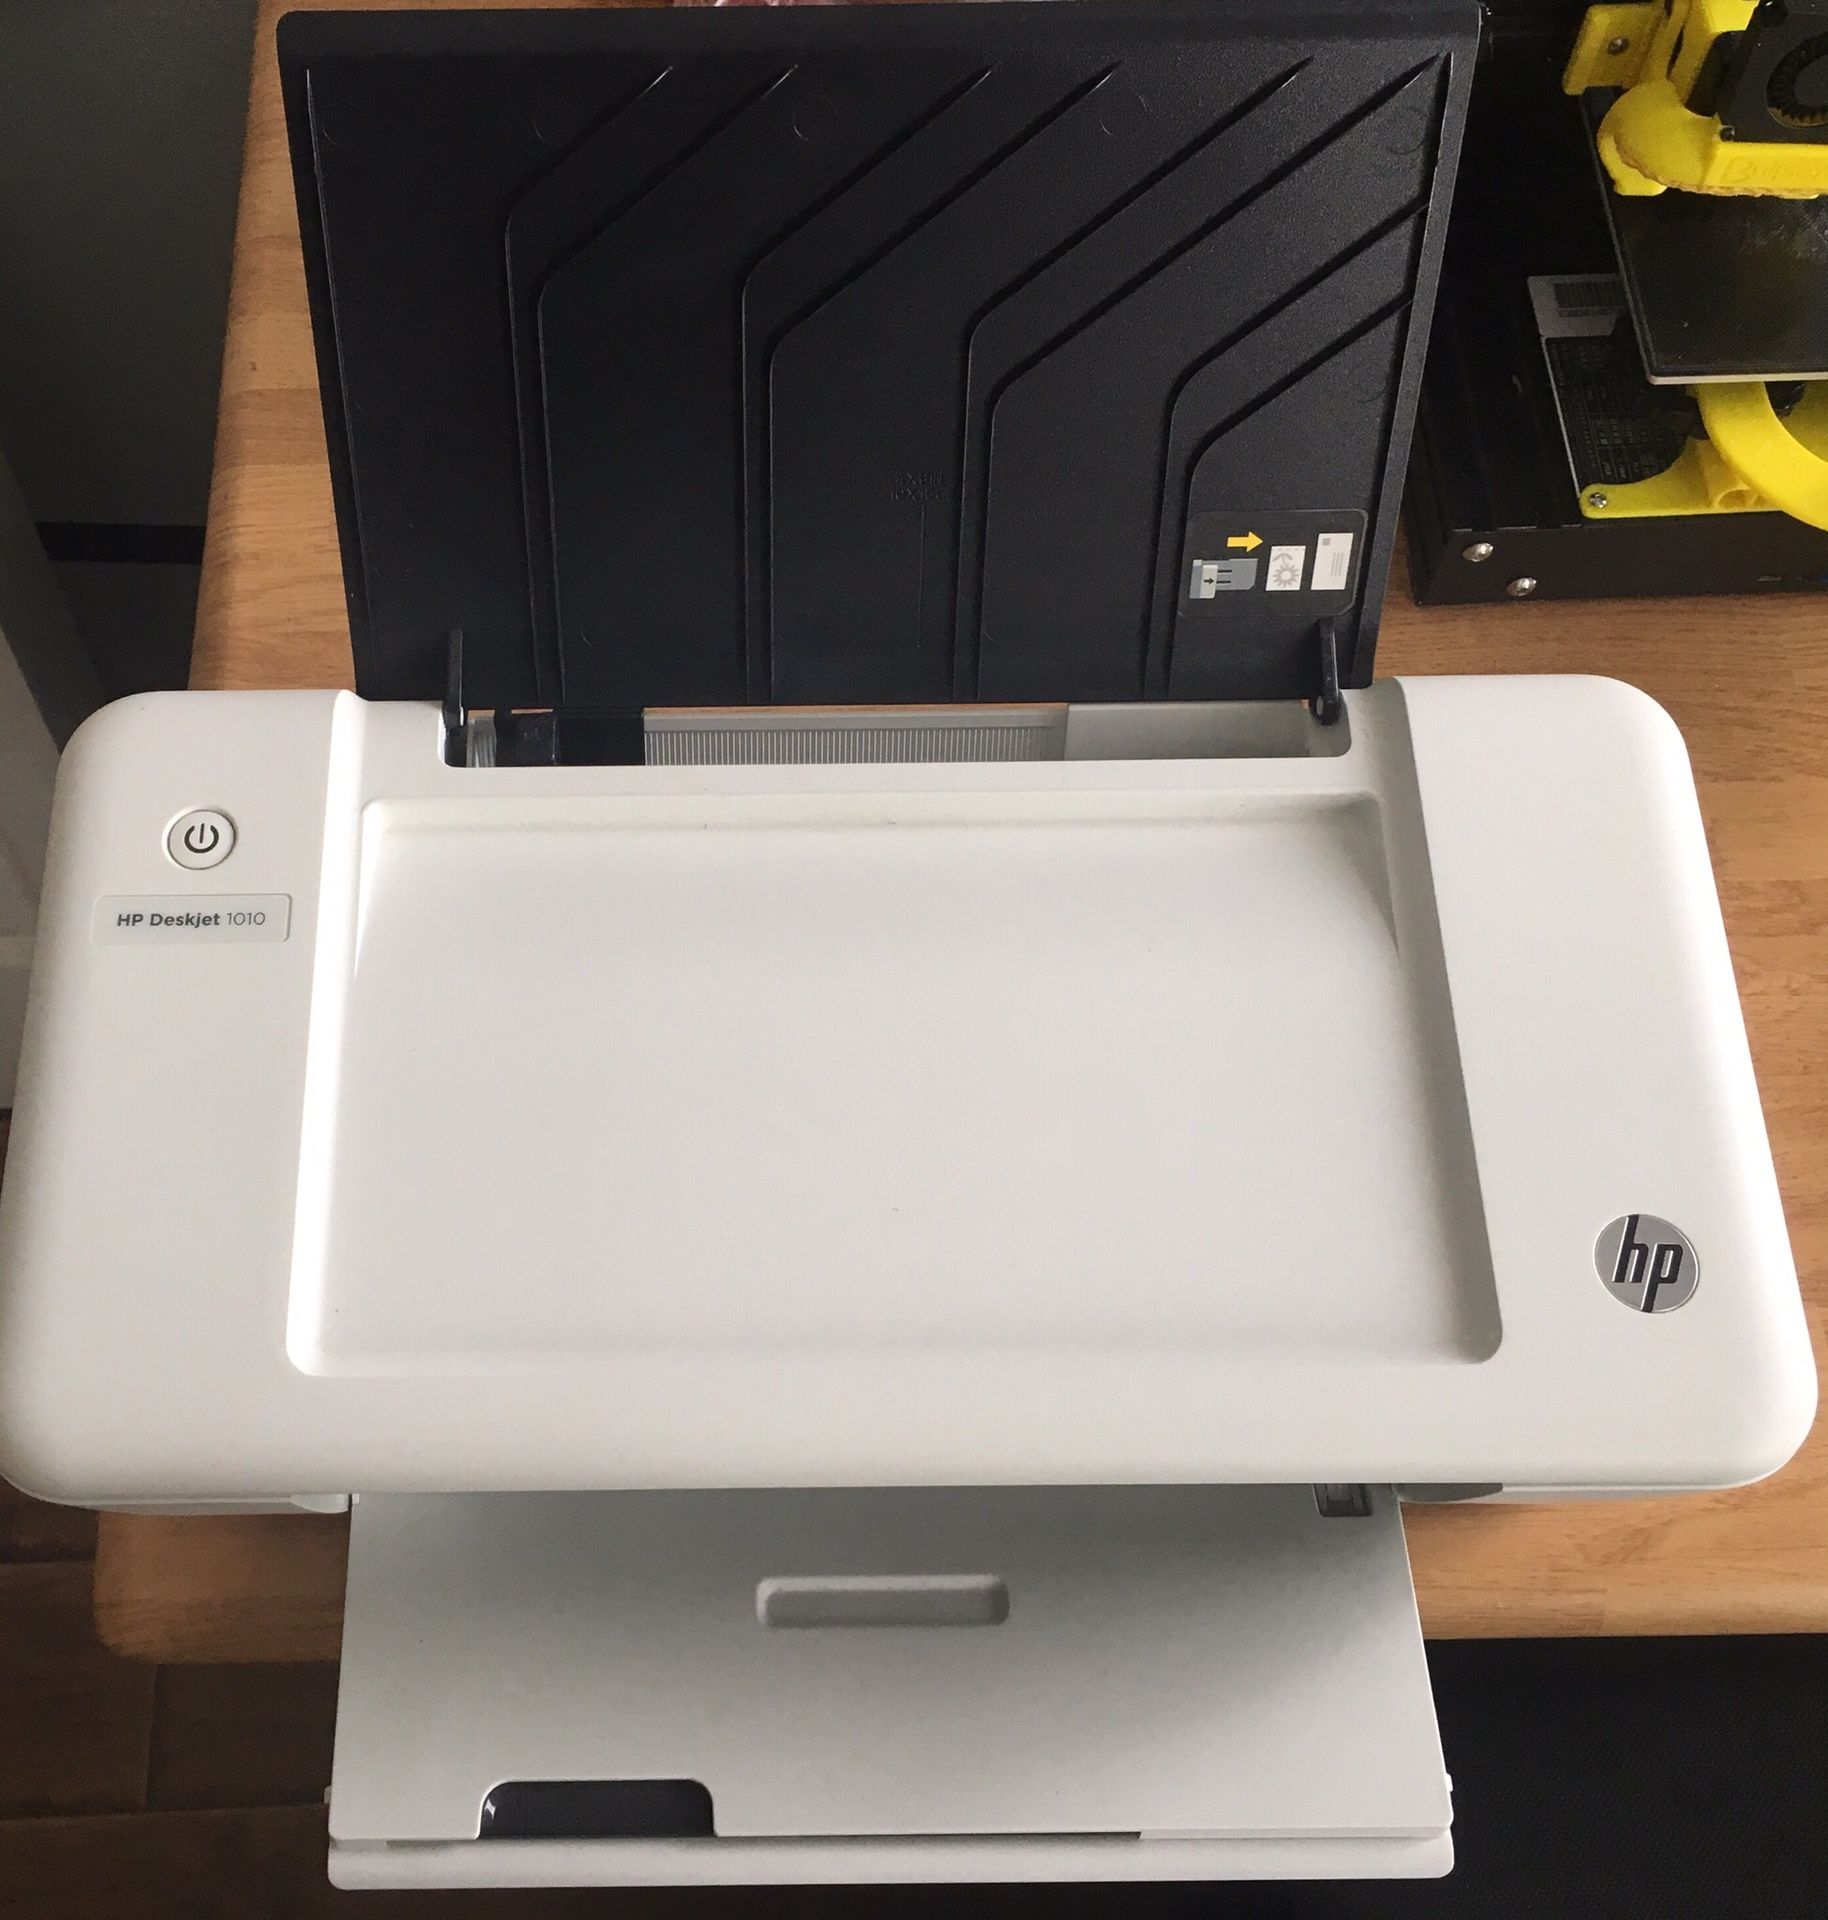 HP DeskJet 1010 Printer, Like New